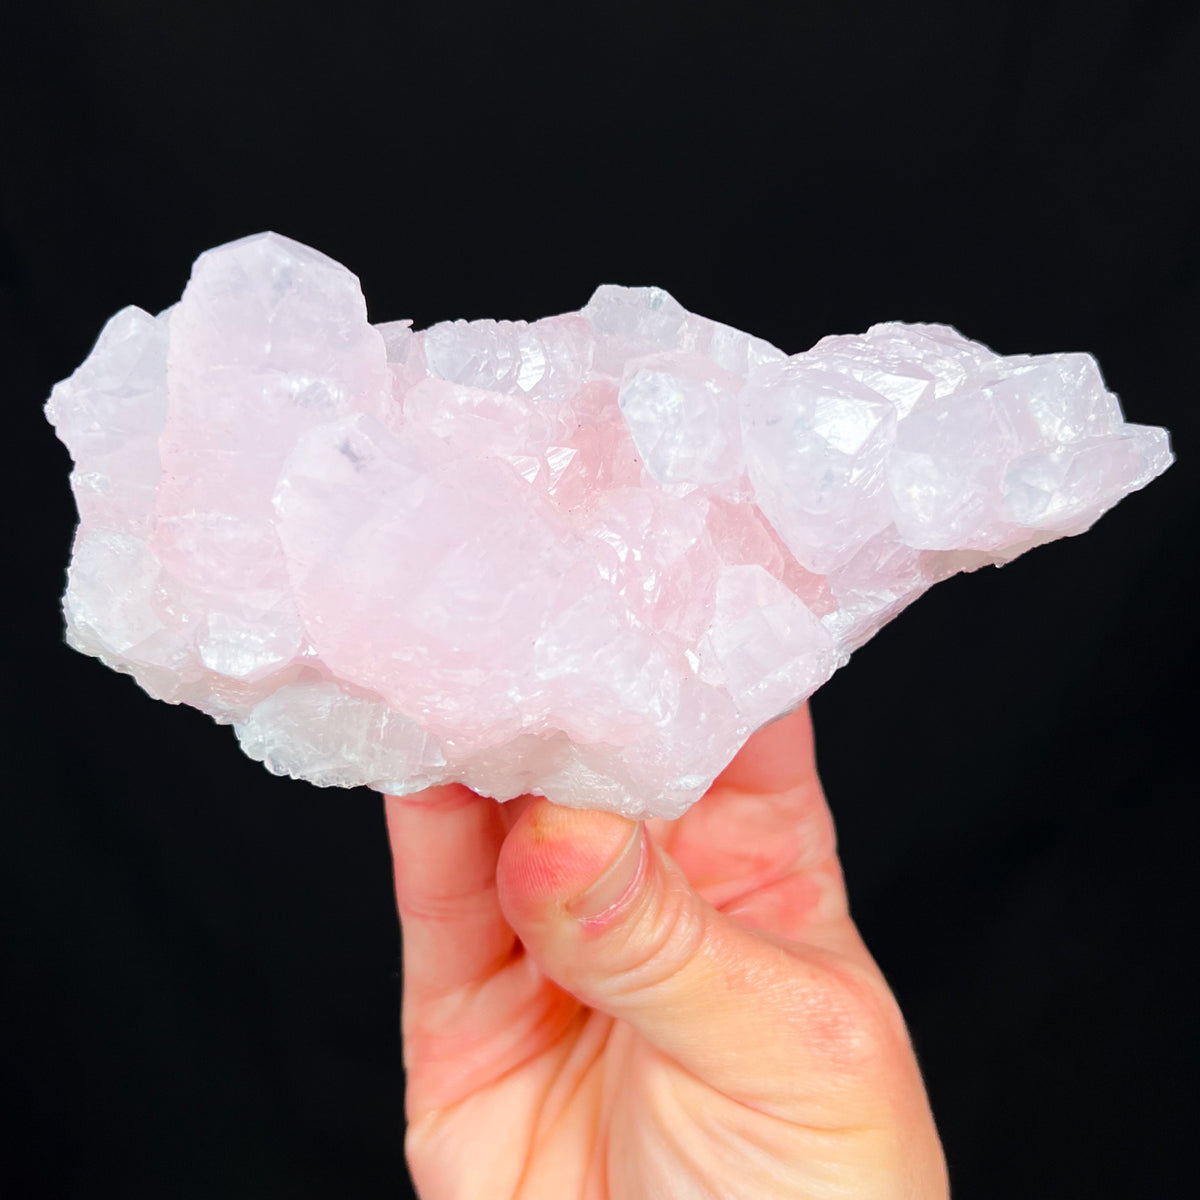 Pink Mangano-calcite crystals